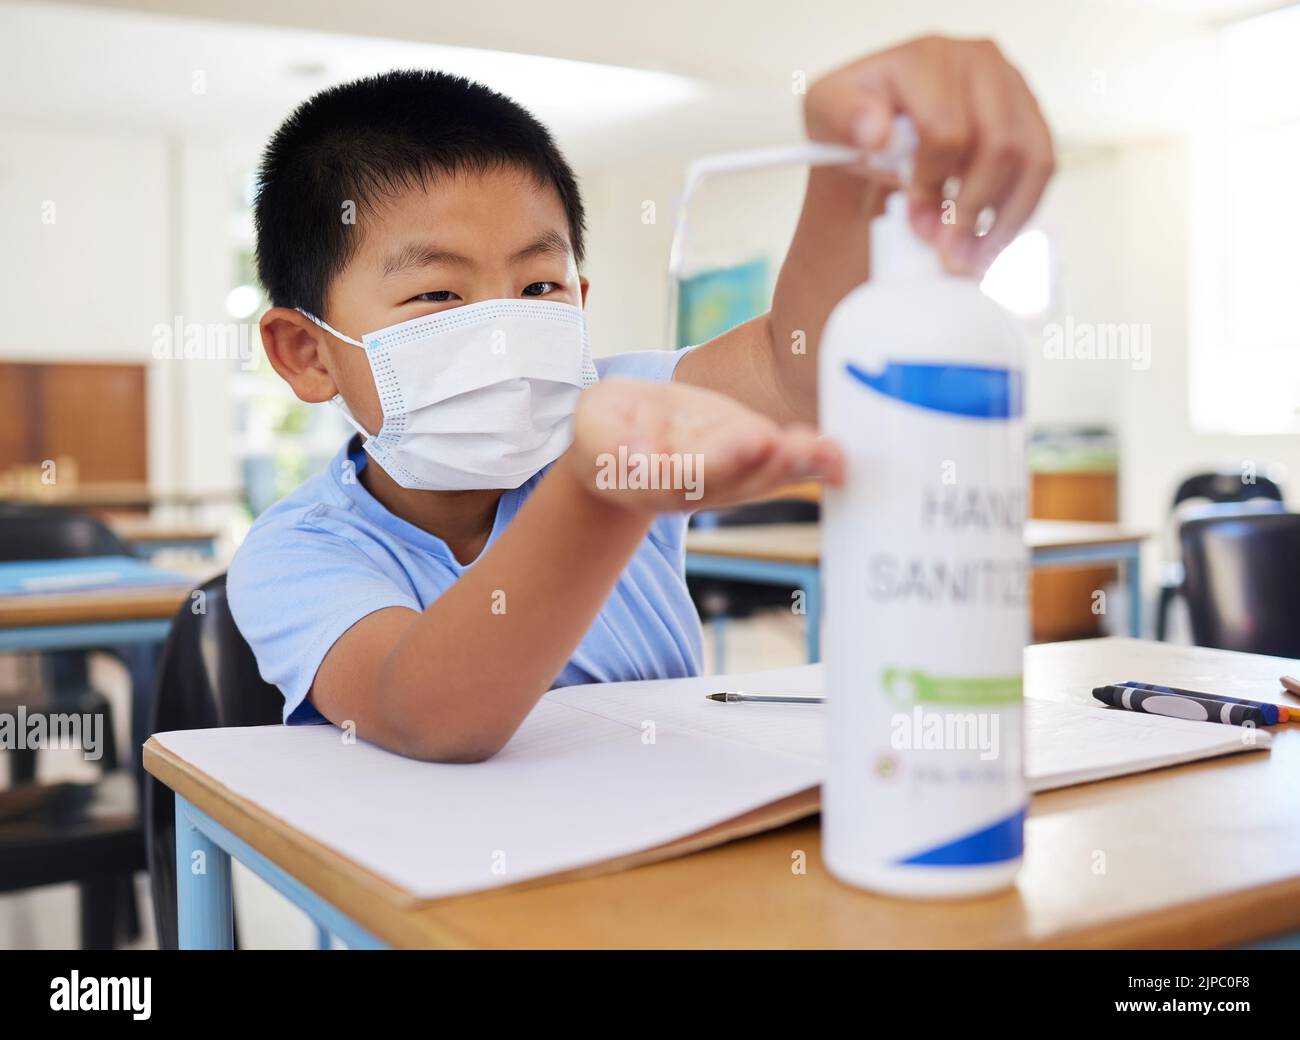 Hygiène, sécurité et routine de covid d'un petit garçon utilisant l'assainisseur pour les mains à l'école. Jeune étudiant asiatique avec un masque pratiquant la bonne santé par le nettoyage Banque D'Images